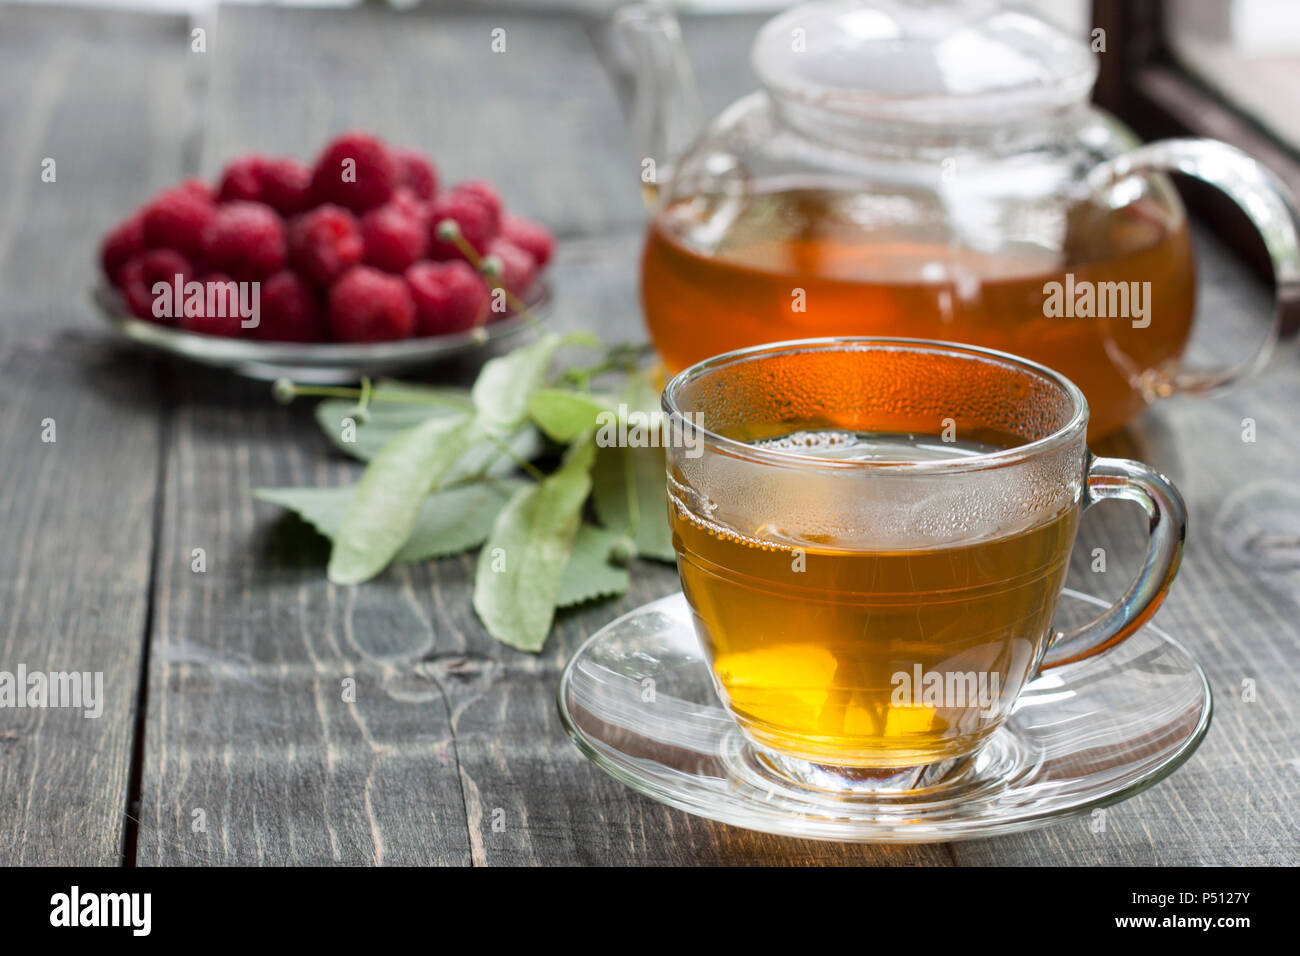 La framboise et le thé vert de un linden sur une table en bois Banque D'Images